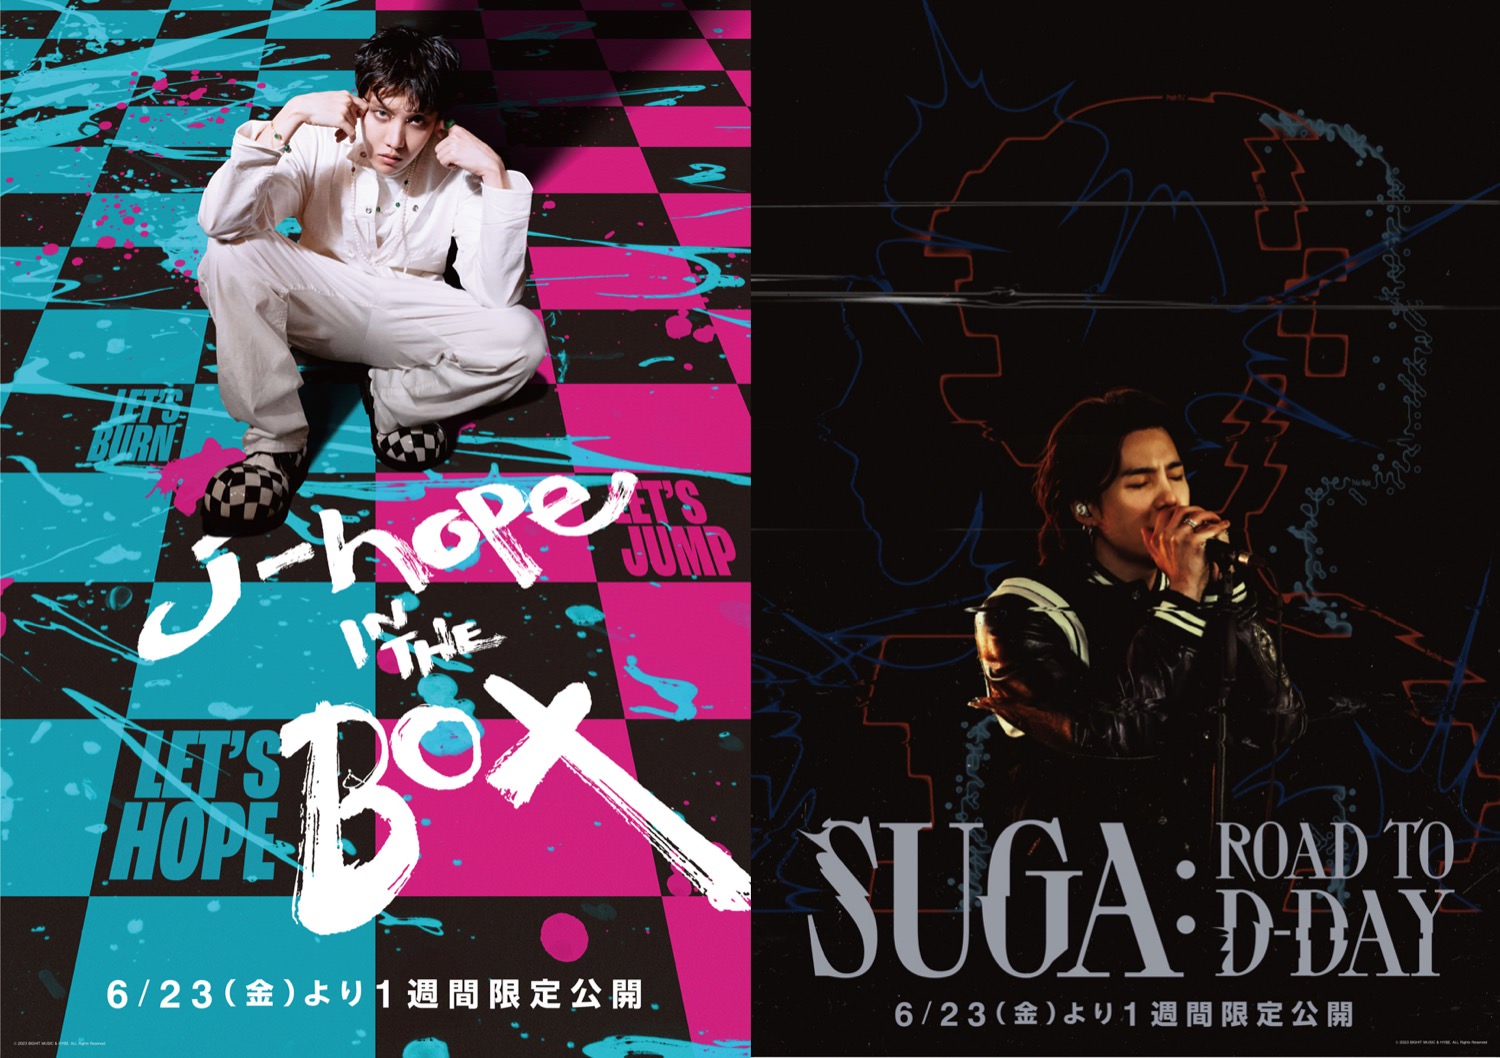 BTS J-HOPE & SUGAのドキュメンタリー映画 6月23日より限定公開!